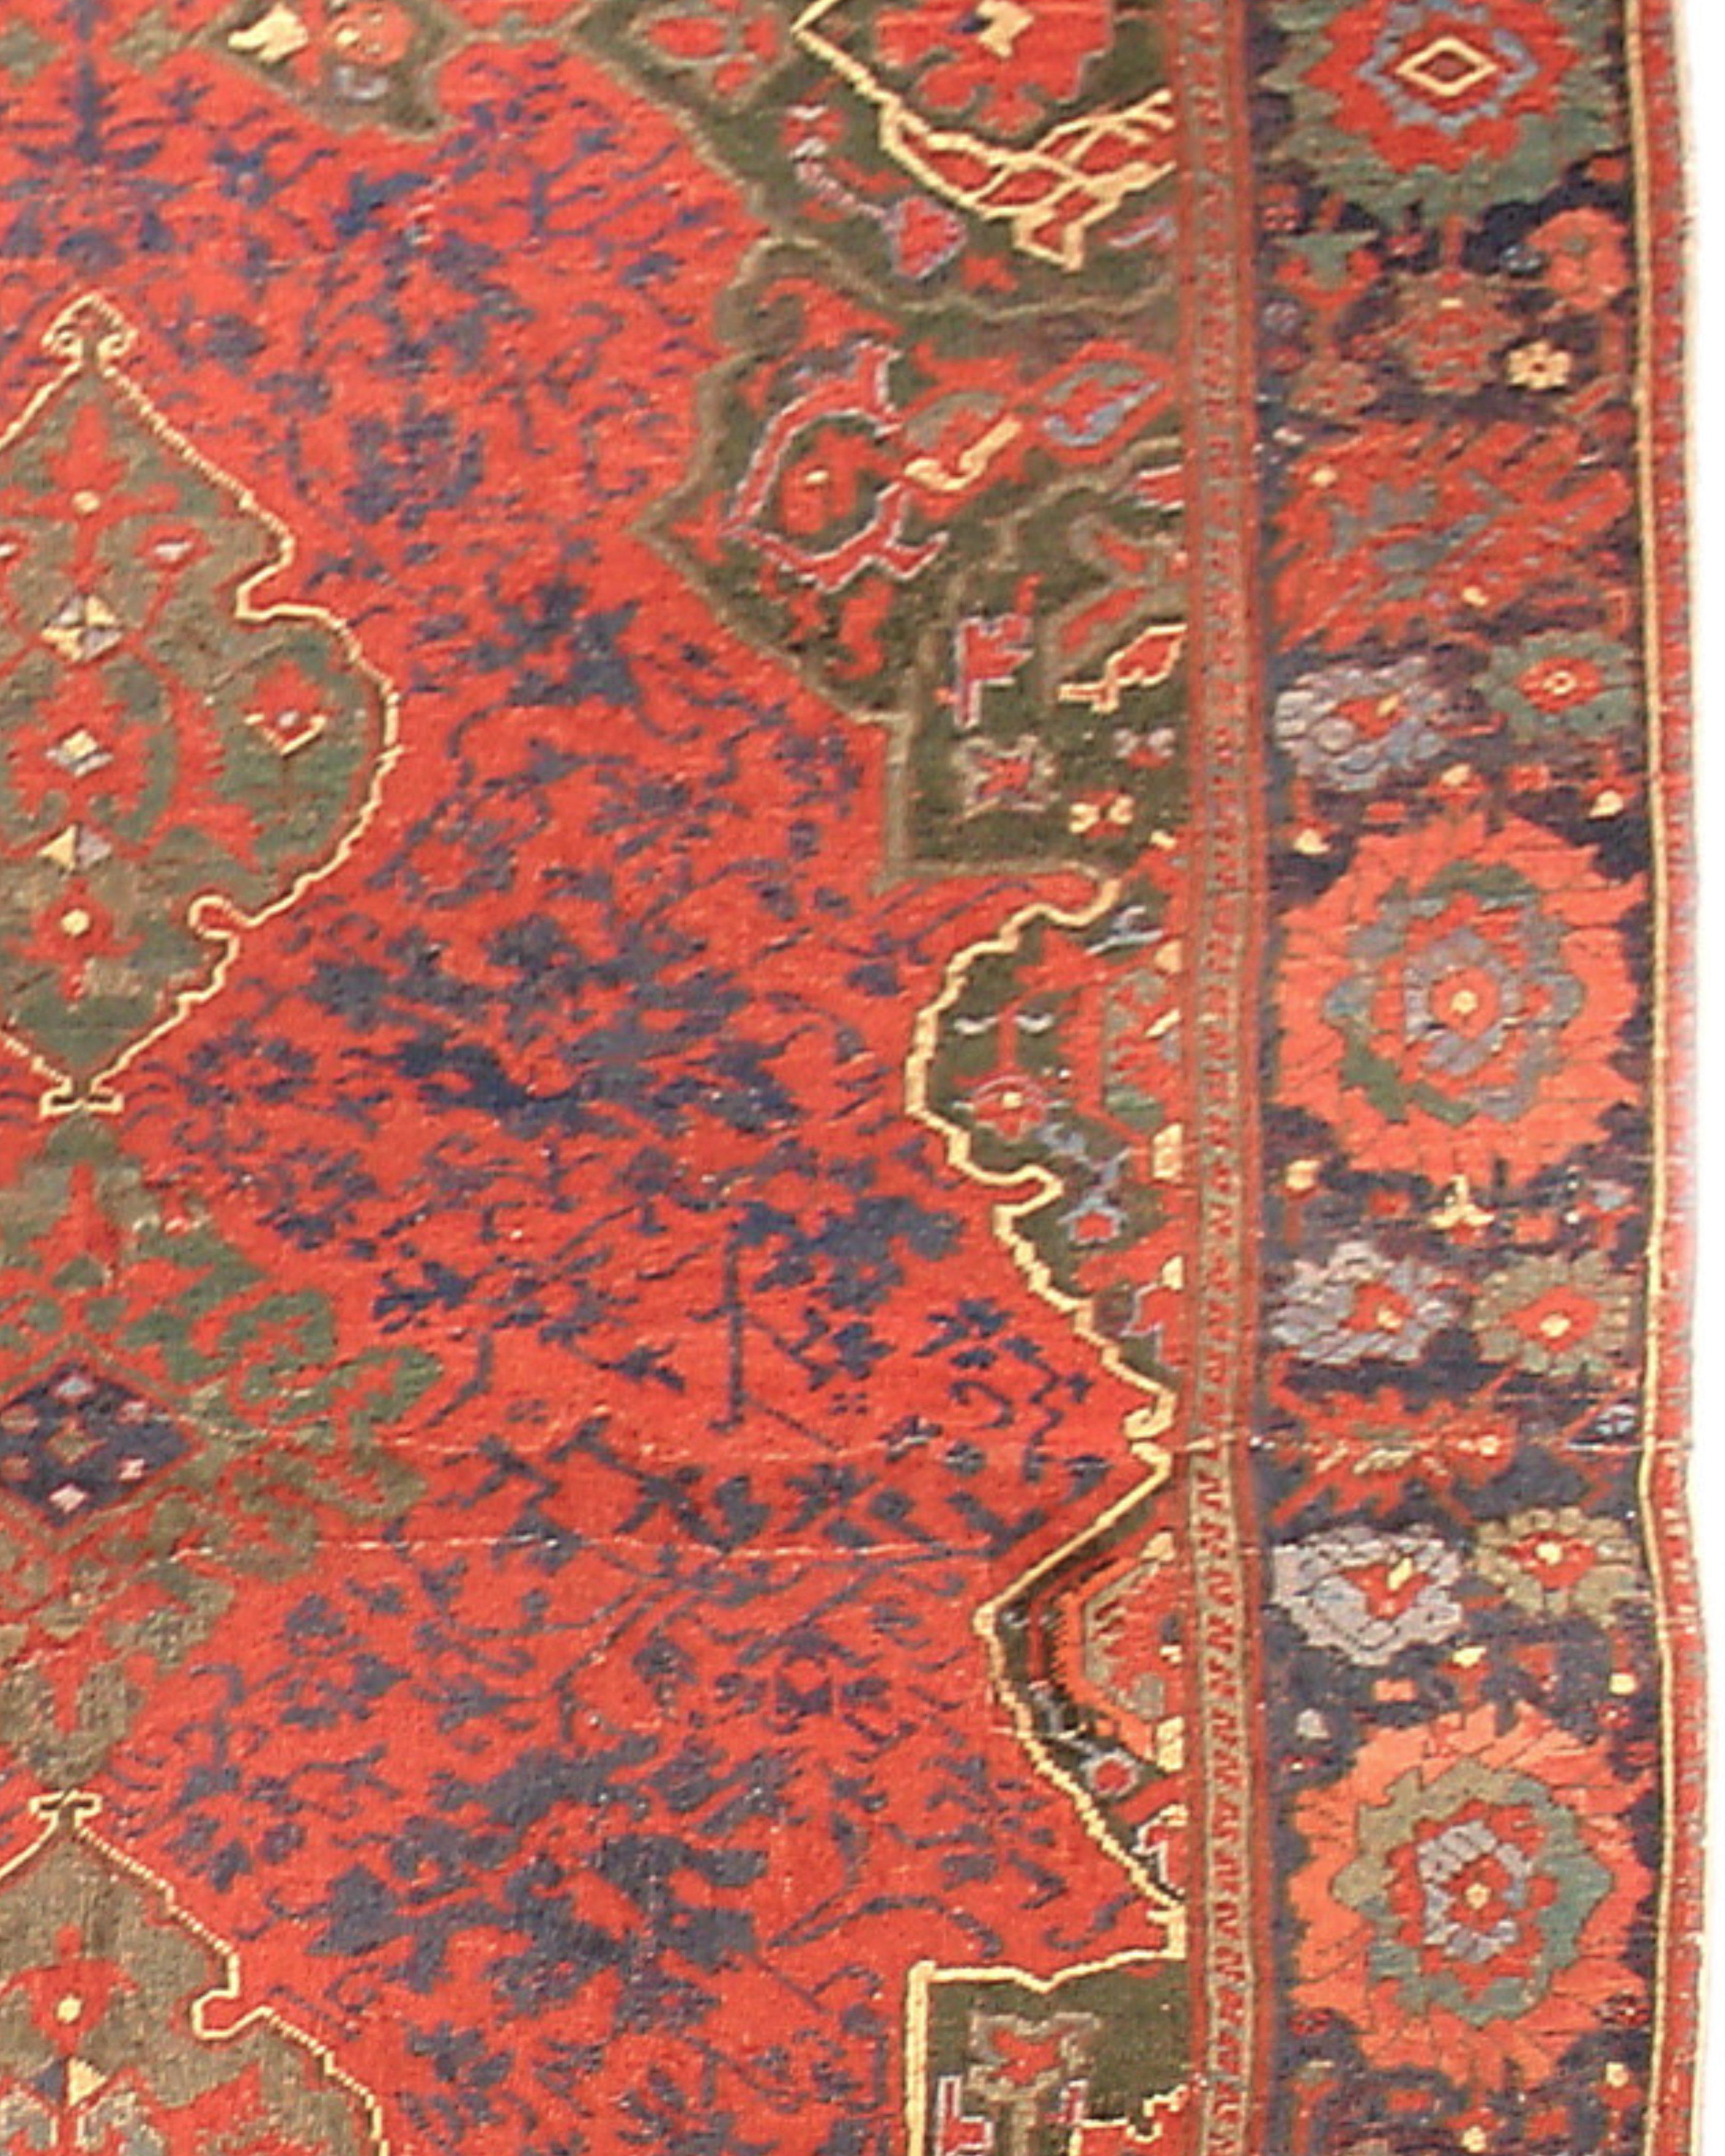 Antiker türkischer Oushak-Teppich, spätes 17. Jahrhundert

Zusätzliche Informationen:
Abmessungen: 6'4